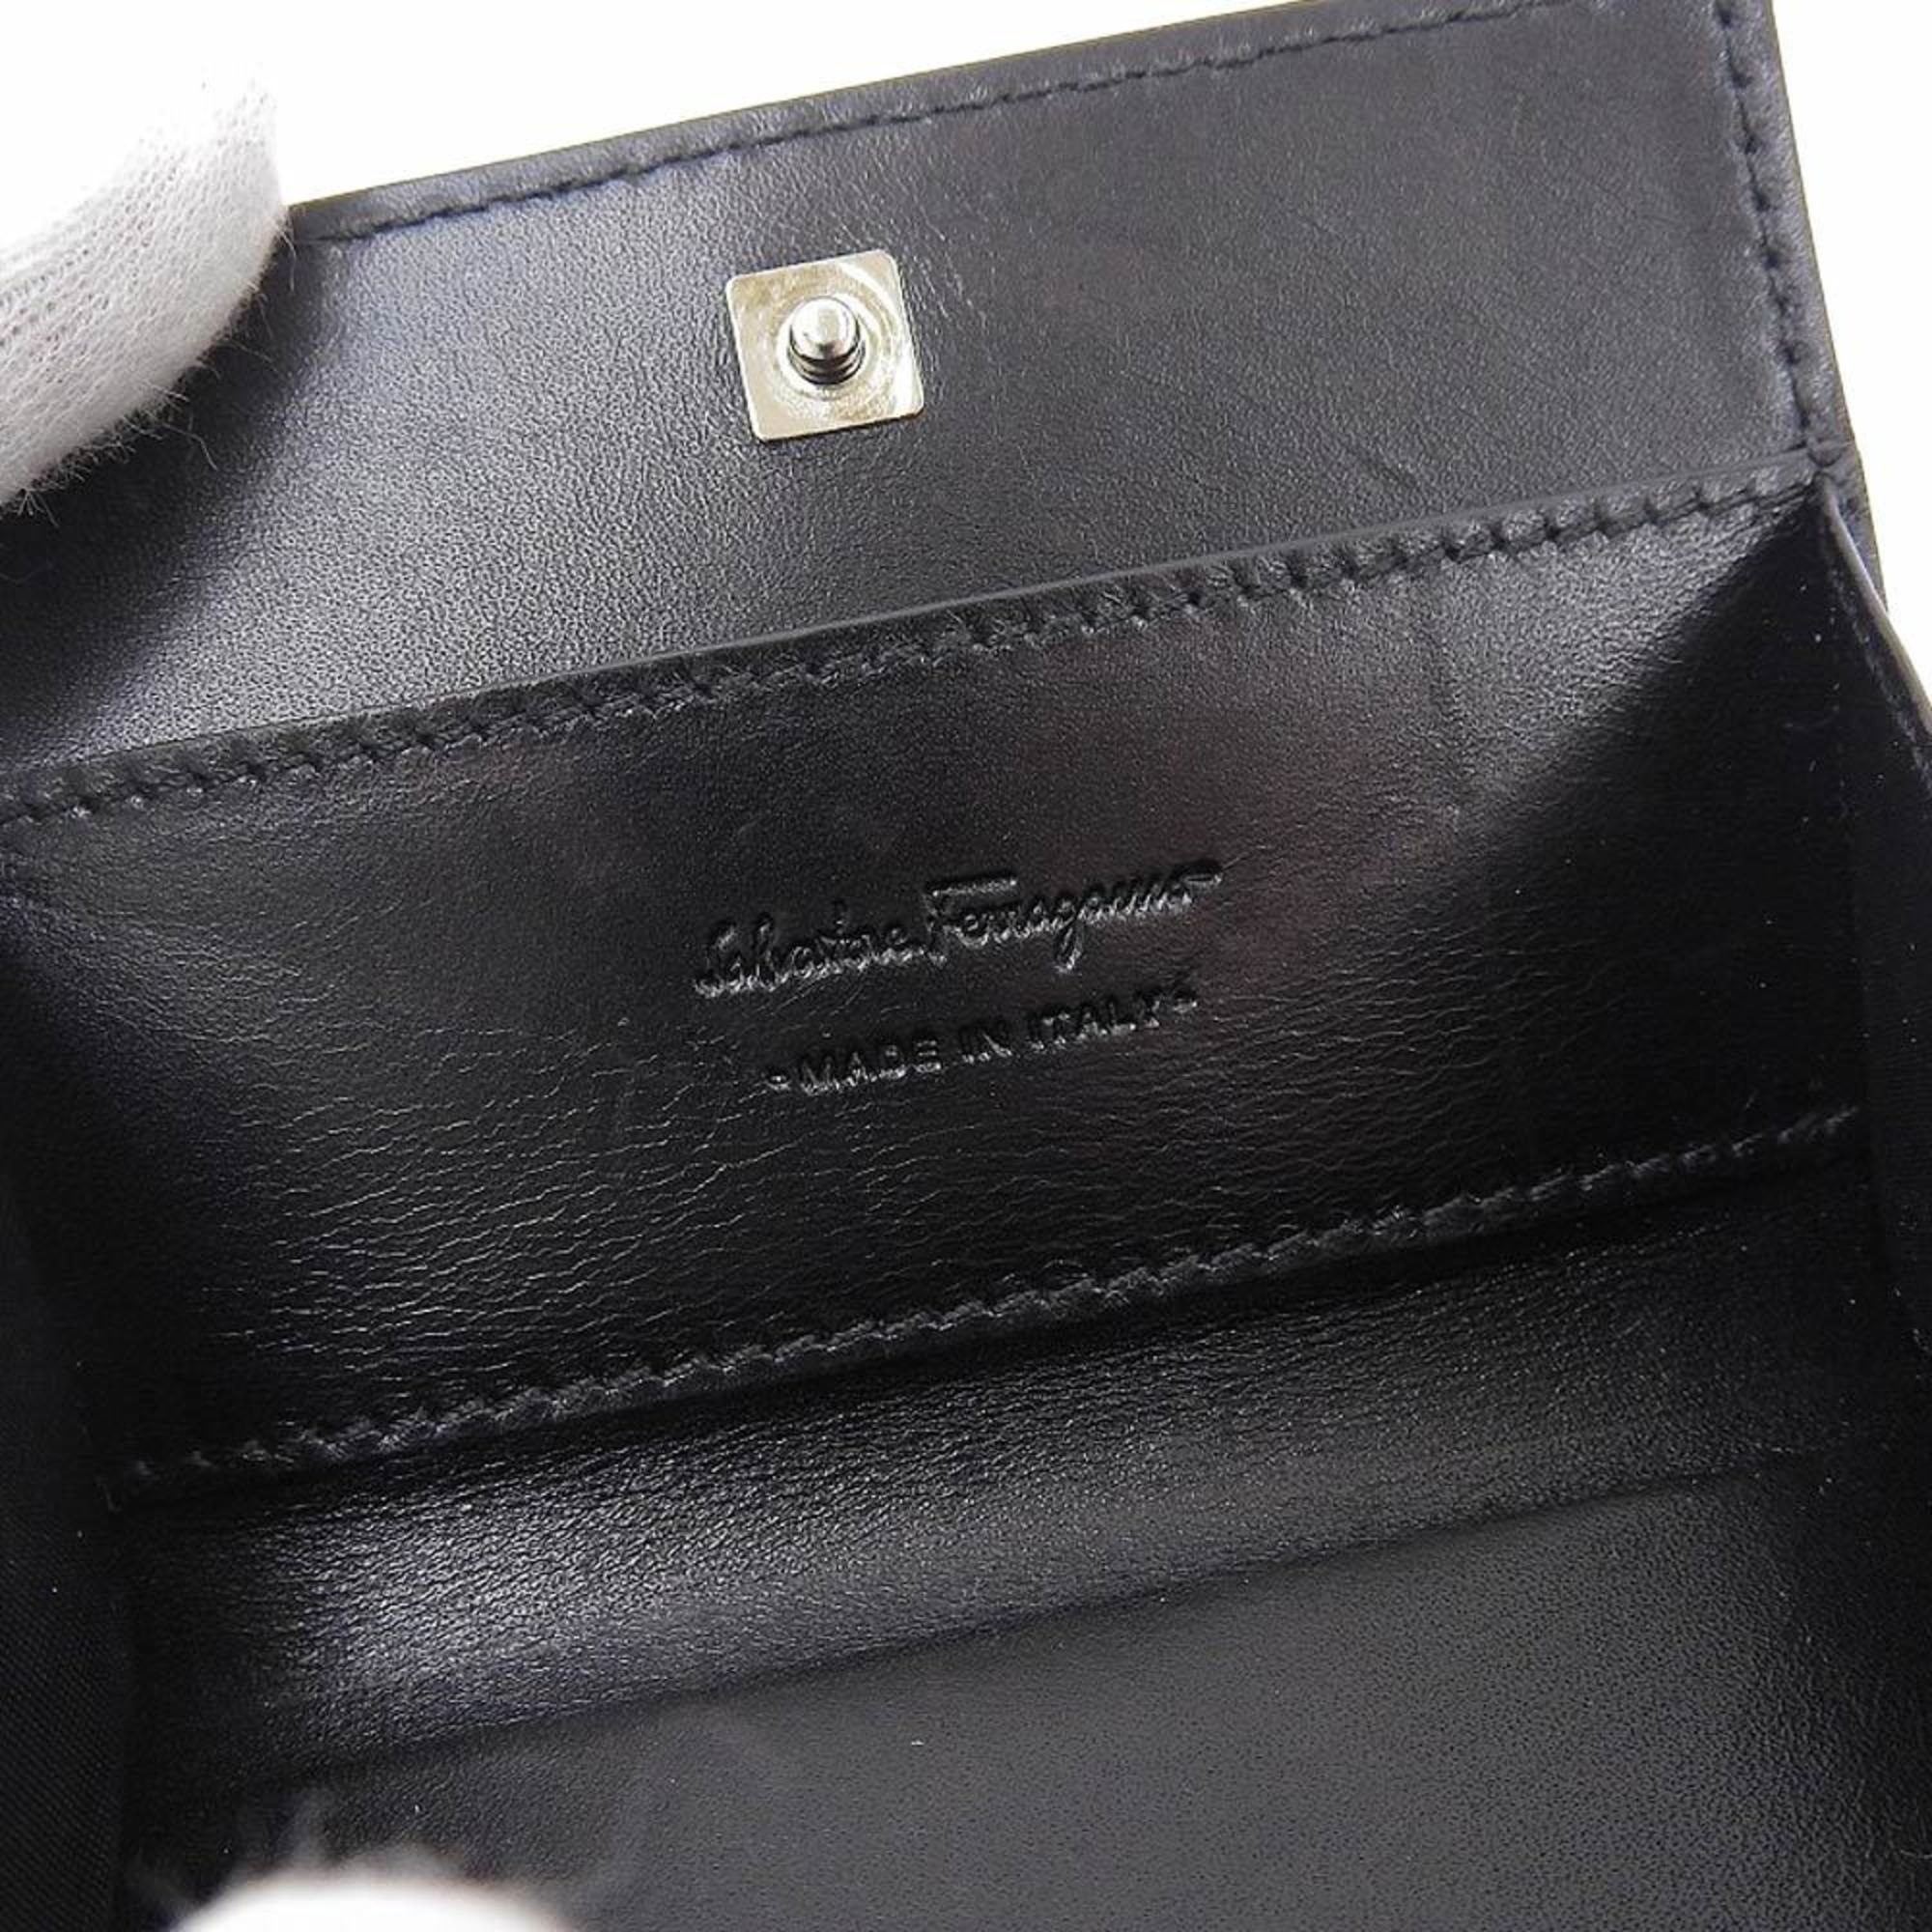 Salvatore Ferragamo coin purse case leather black 66 5019 12